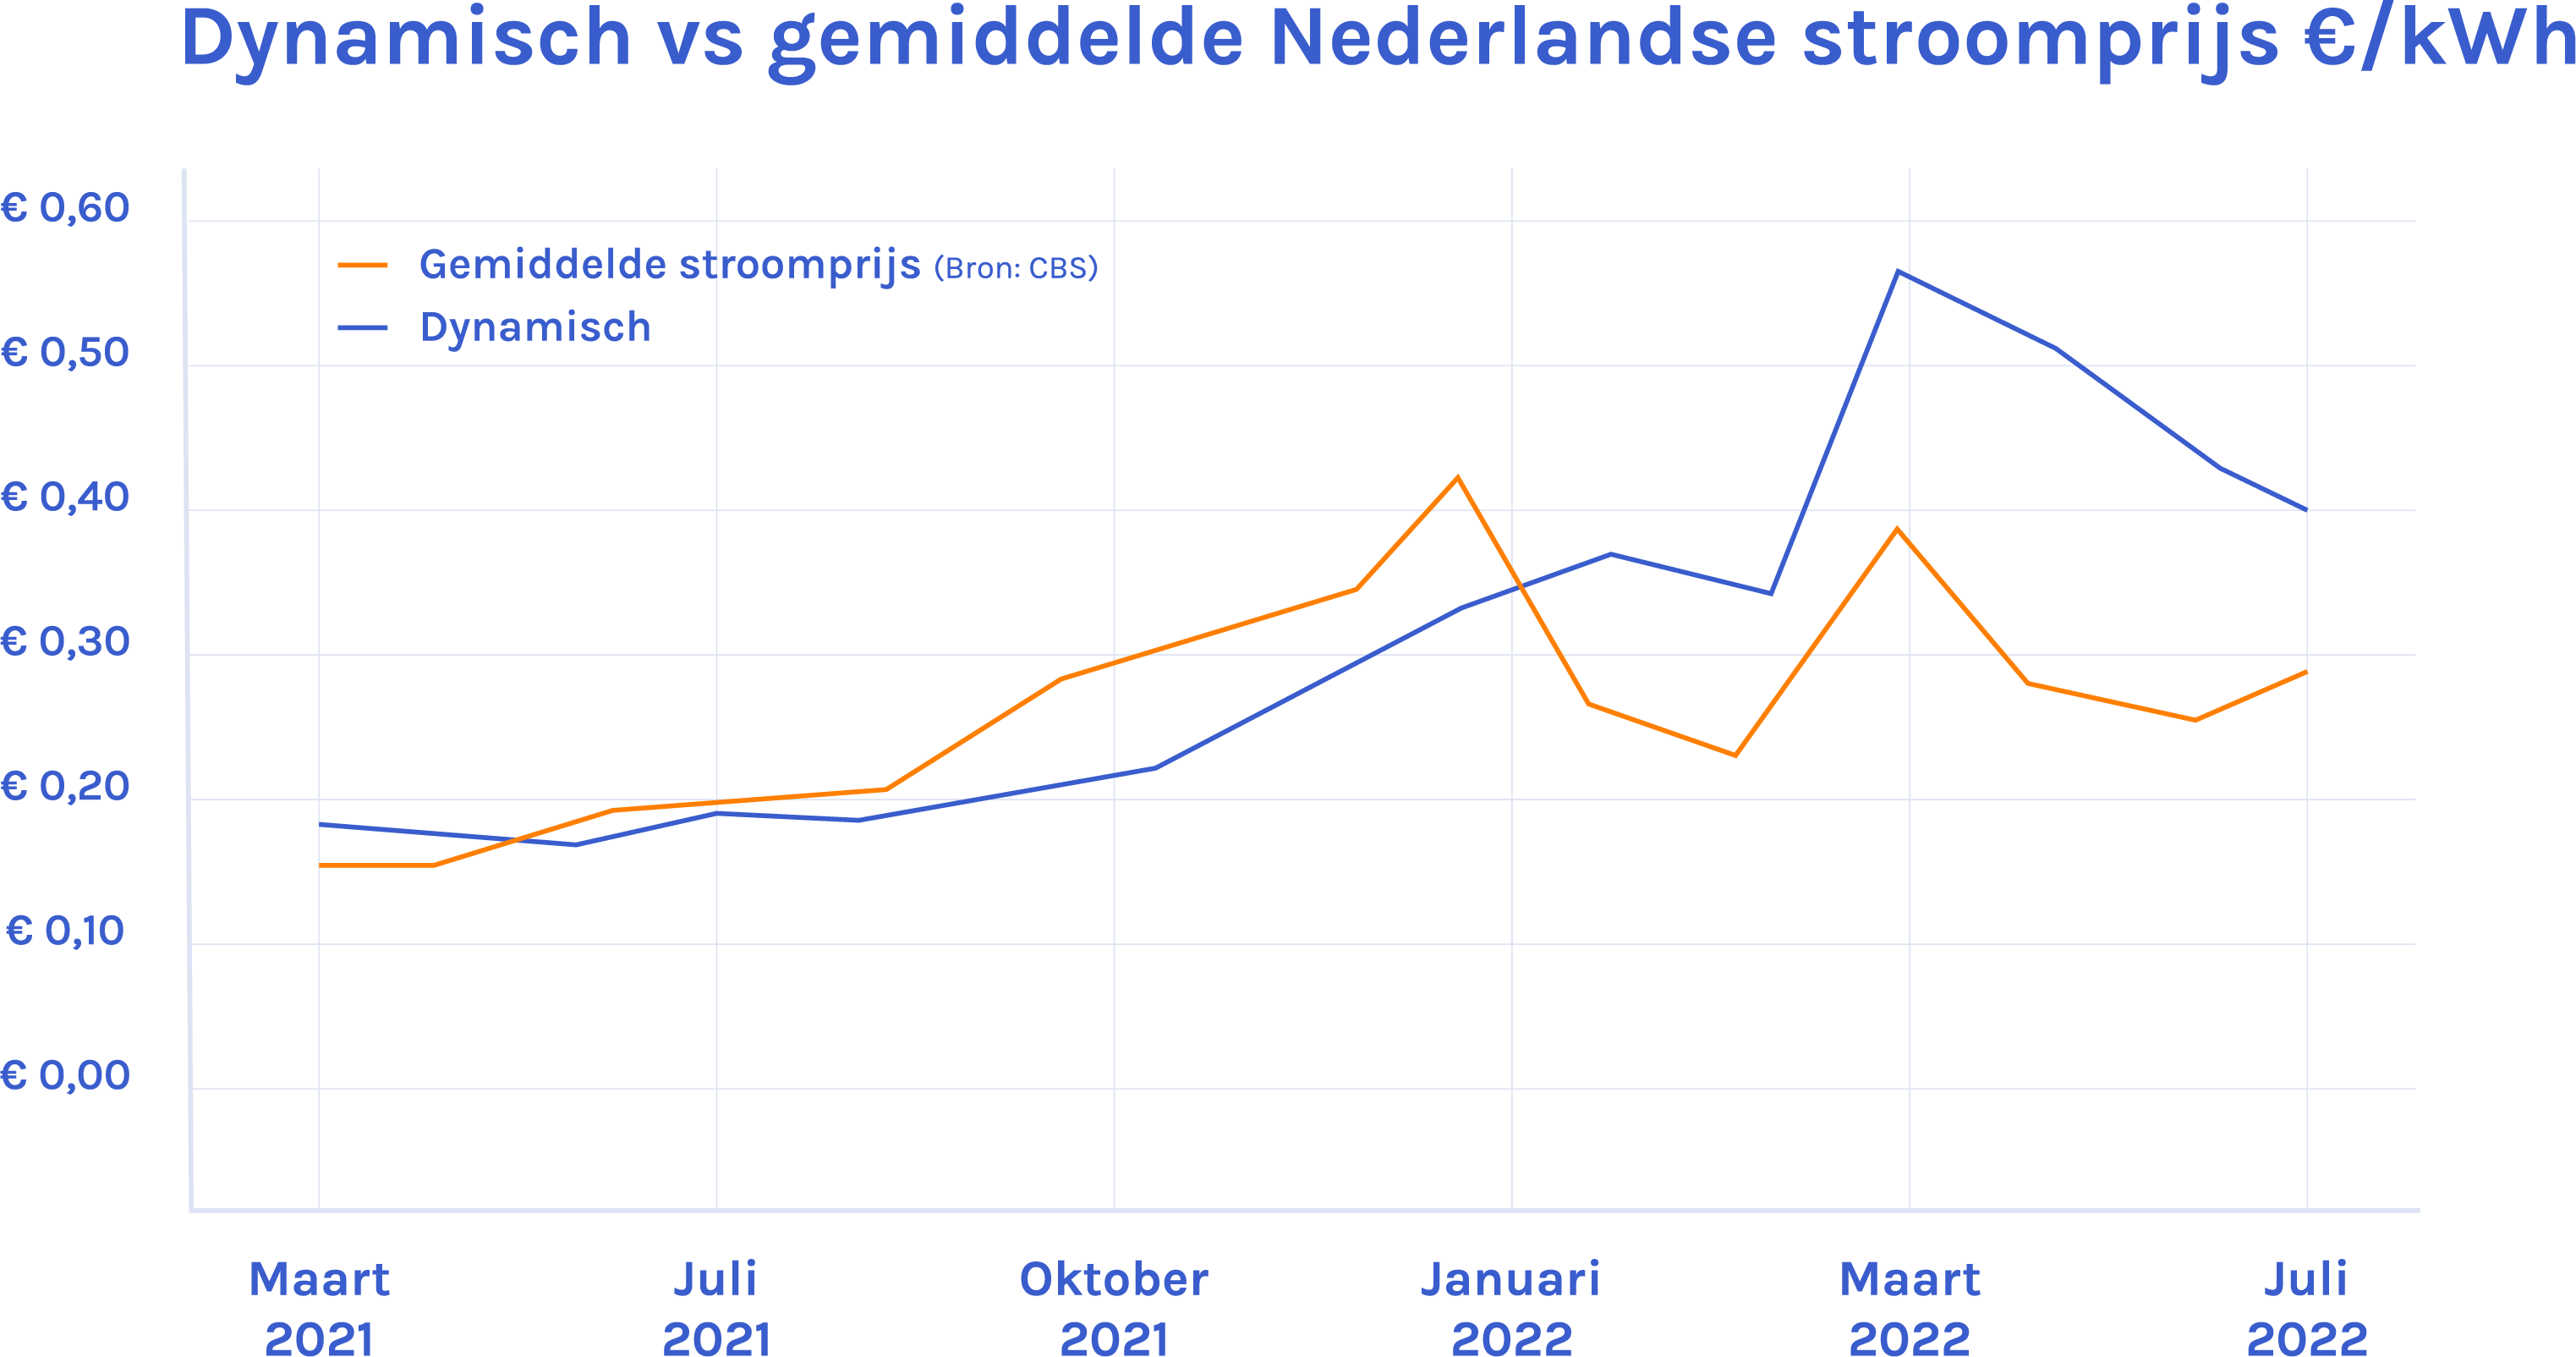 Dynamisch versus gemiddelde Nederlandse stroomprijs